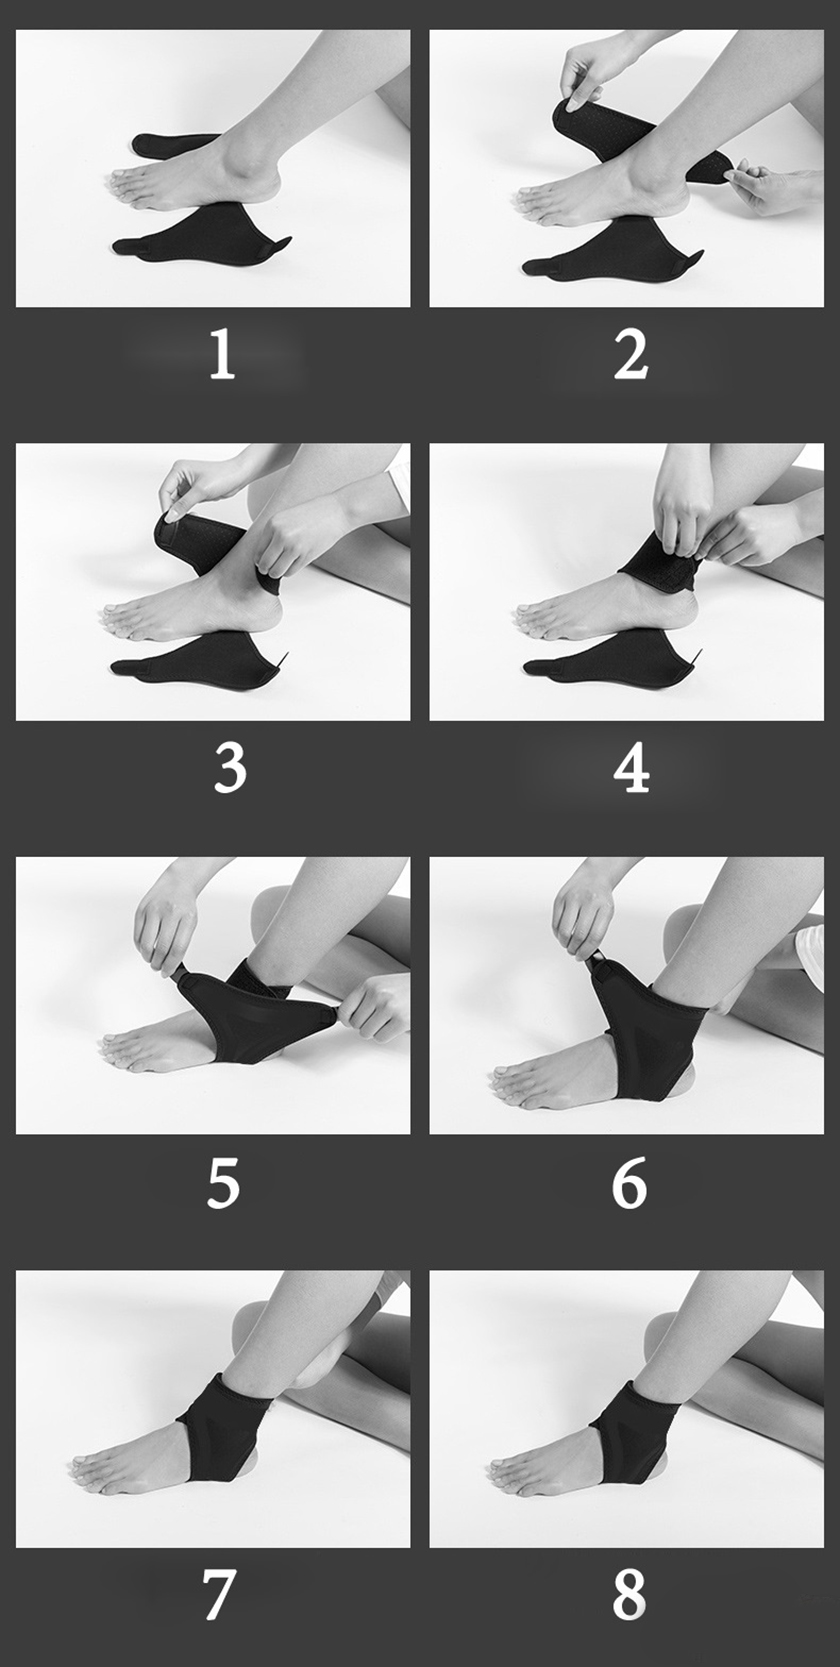 Hướng dẫn cách dùng đai bảo vệ cổ chân đơn giản